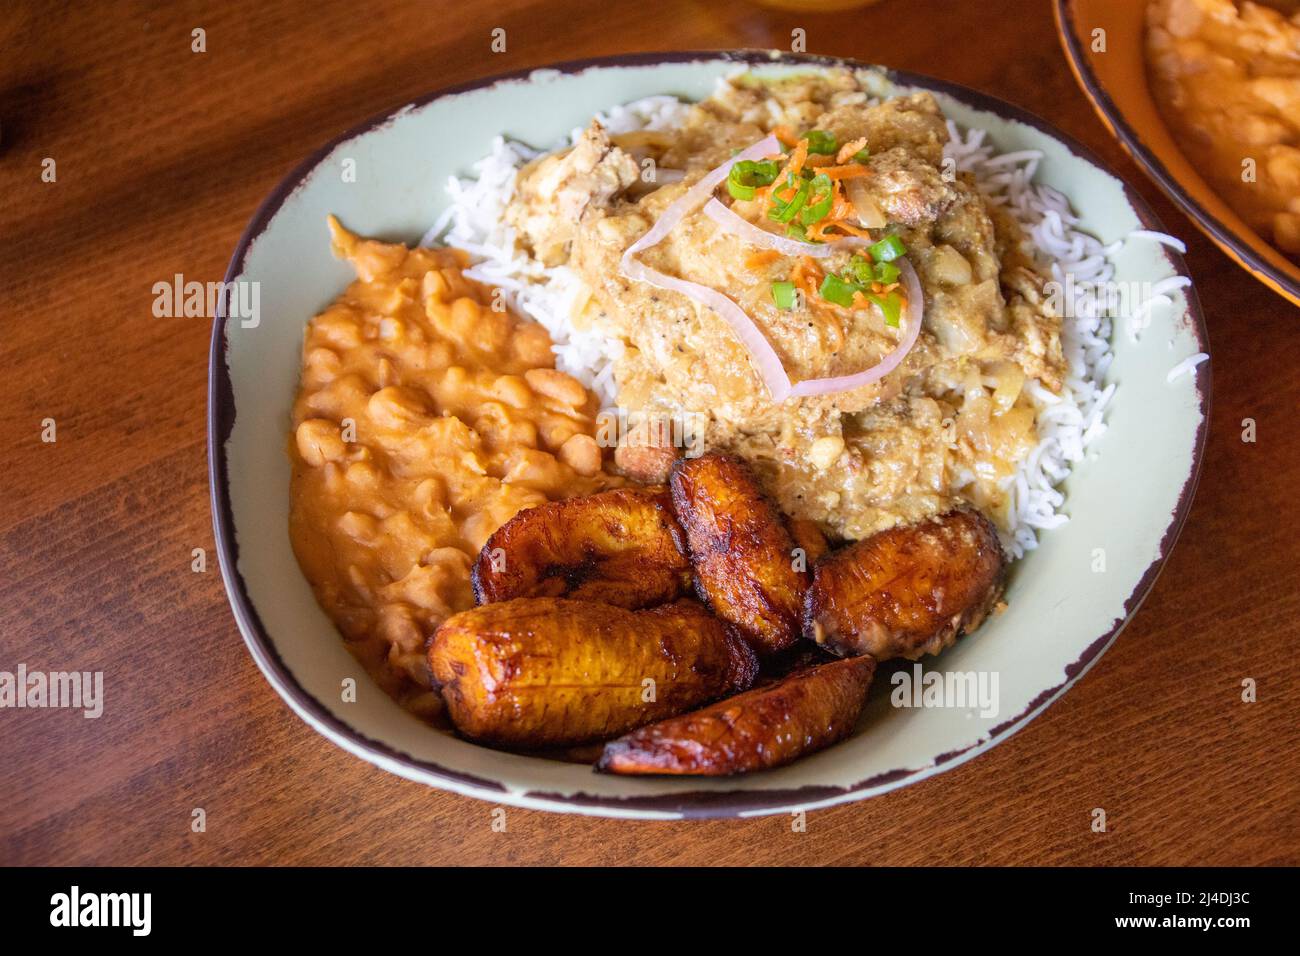 Kuku, pollo en salsa rica, picante de mostaza y cebolla, restaurante Baobab Fare, Detroit, MI, ESTADOS UNIDOS Foto de stock